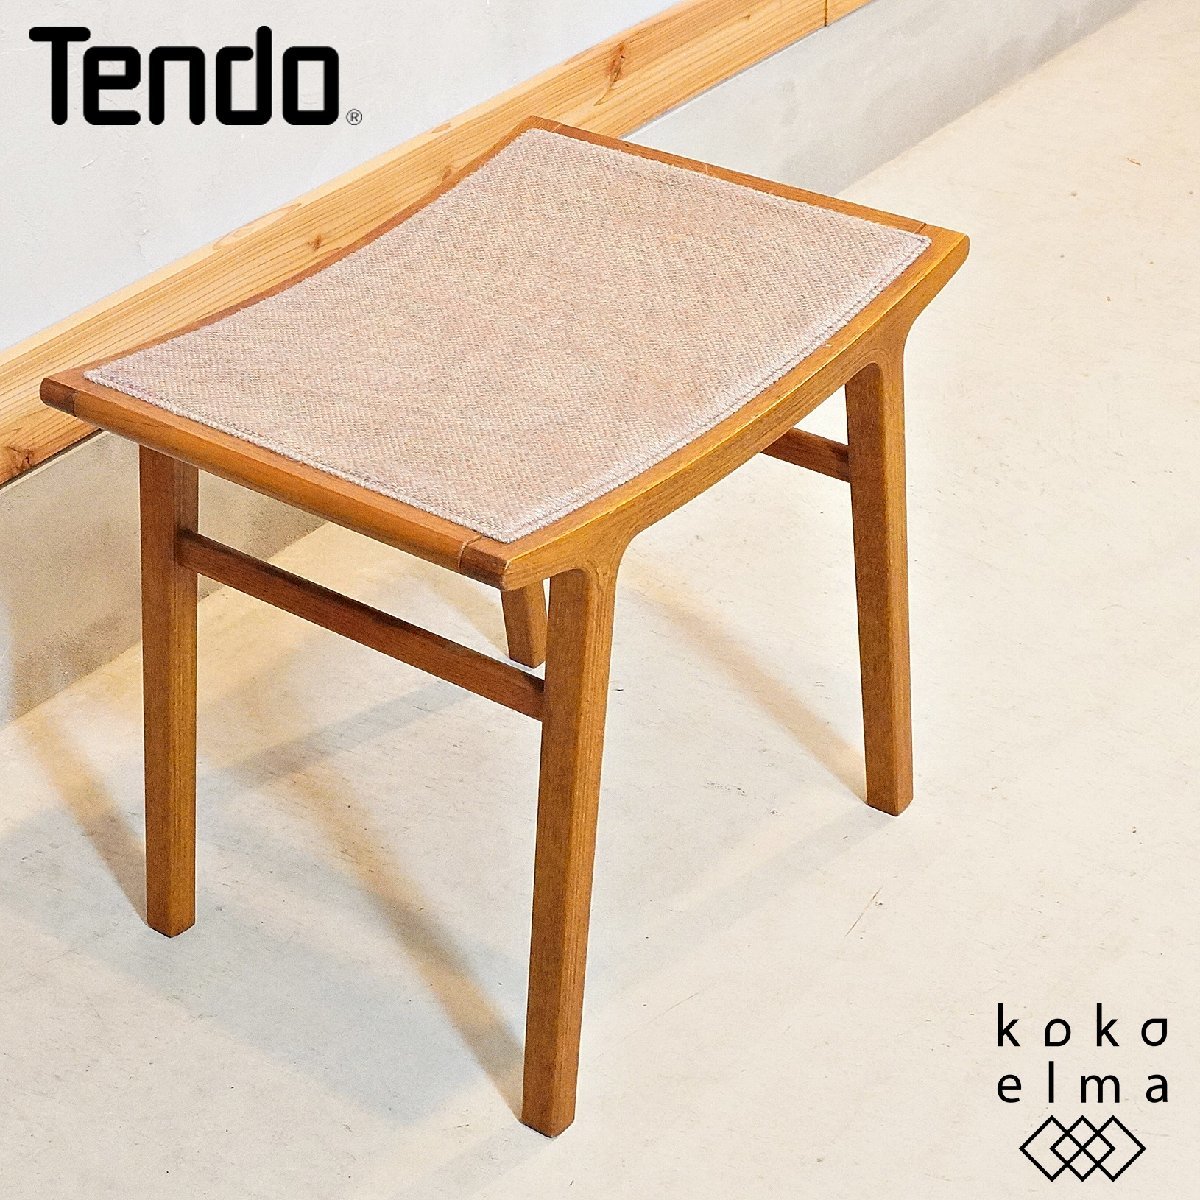 名作 TENDO 天童木工 DH339 北欧スタイル コンパクト ナチュラルモダン